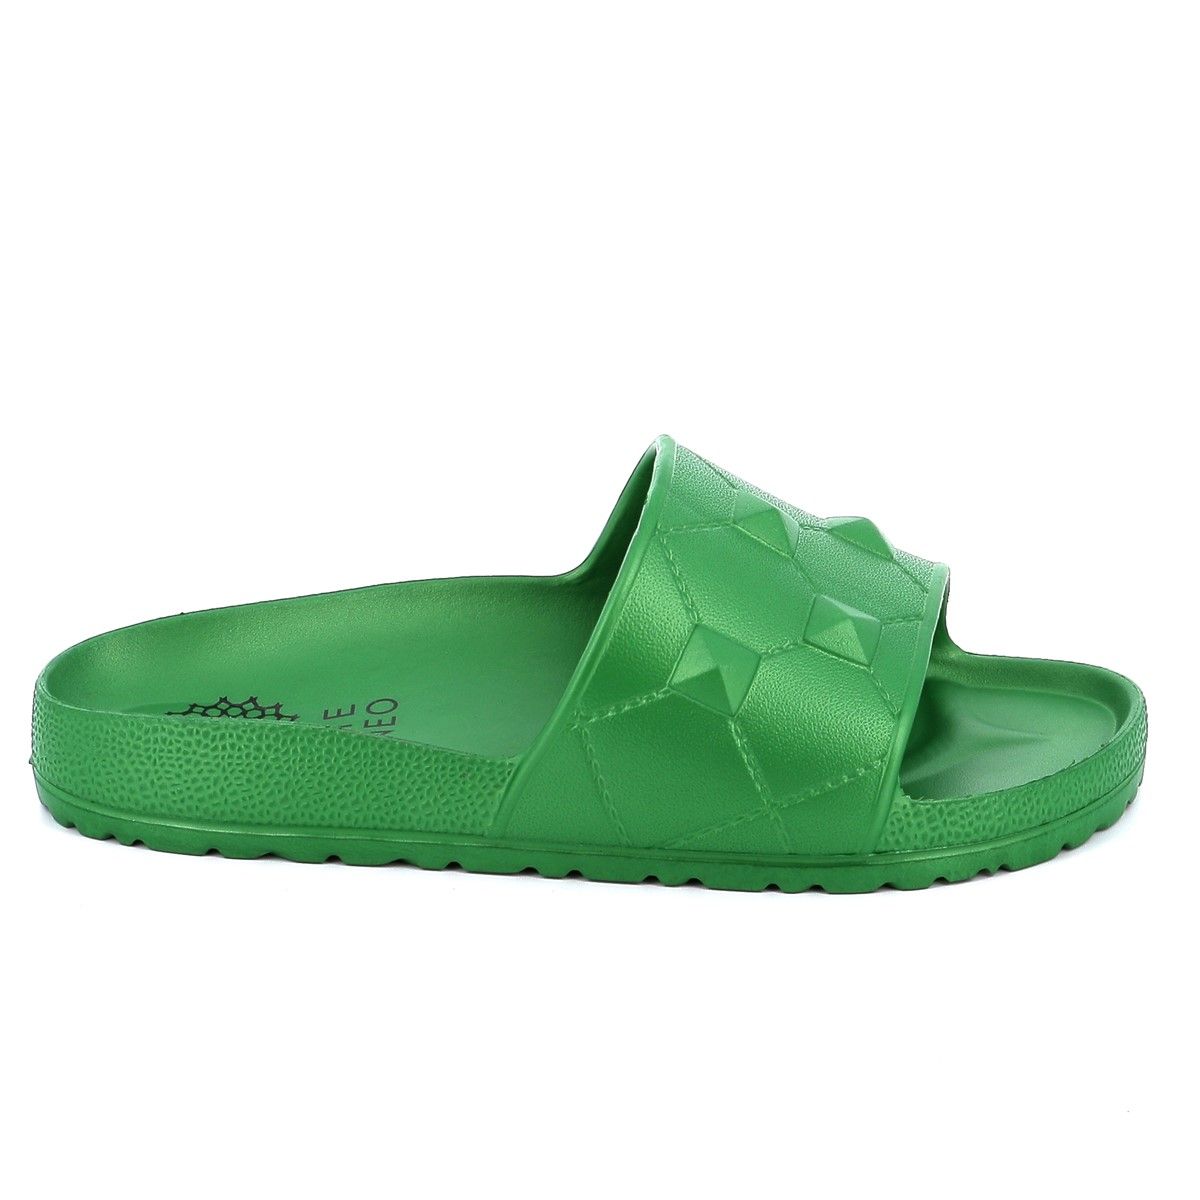 Γυναικεία Σαγιονάρα Ateneo Χρώματος Πράσινο 03 SEA SANDALS.GR